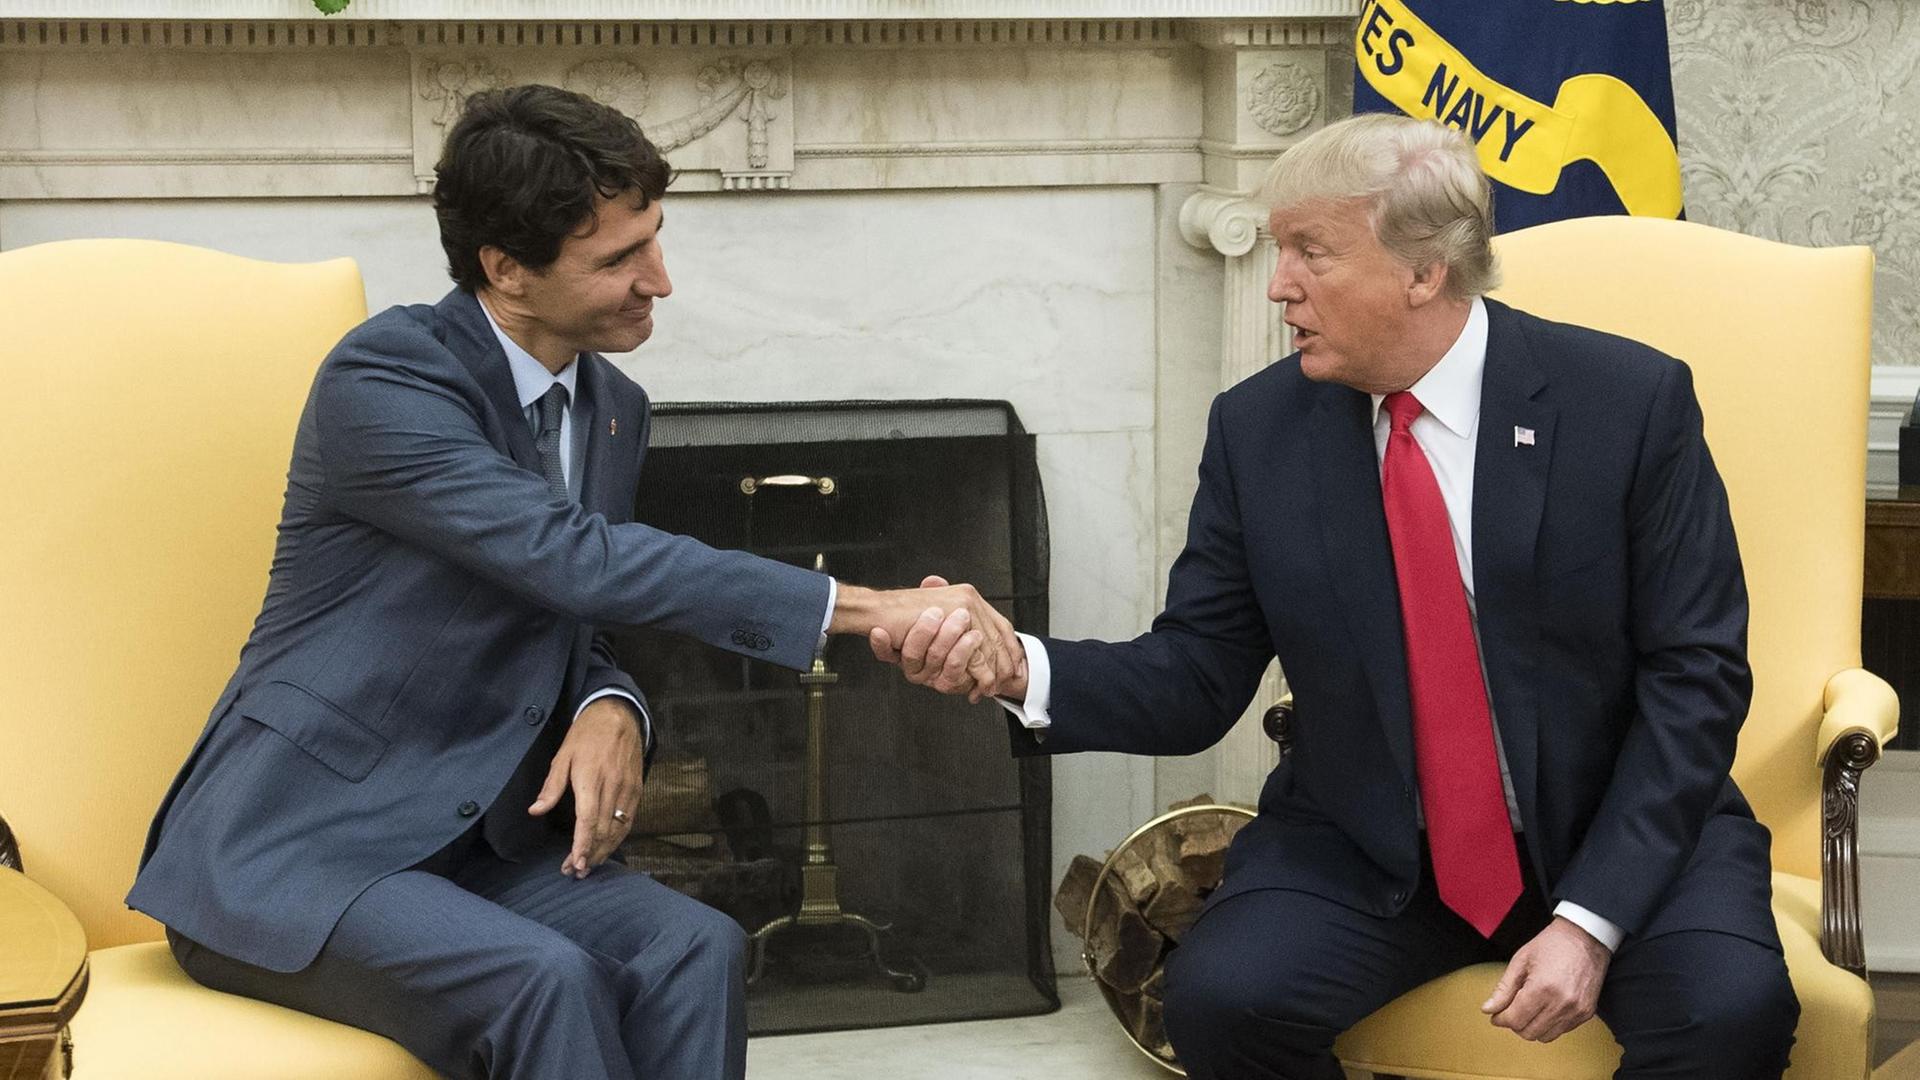 US-Präsident Trump und der kanadische Ministerpräsident Trudeaux bei Beratungen über das Freihandelsabkommen Nafta am 11.10.2017 in Washington. Sie schütteln nicht die Hand.